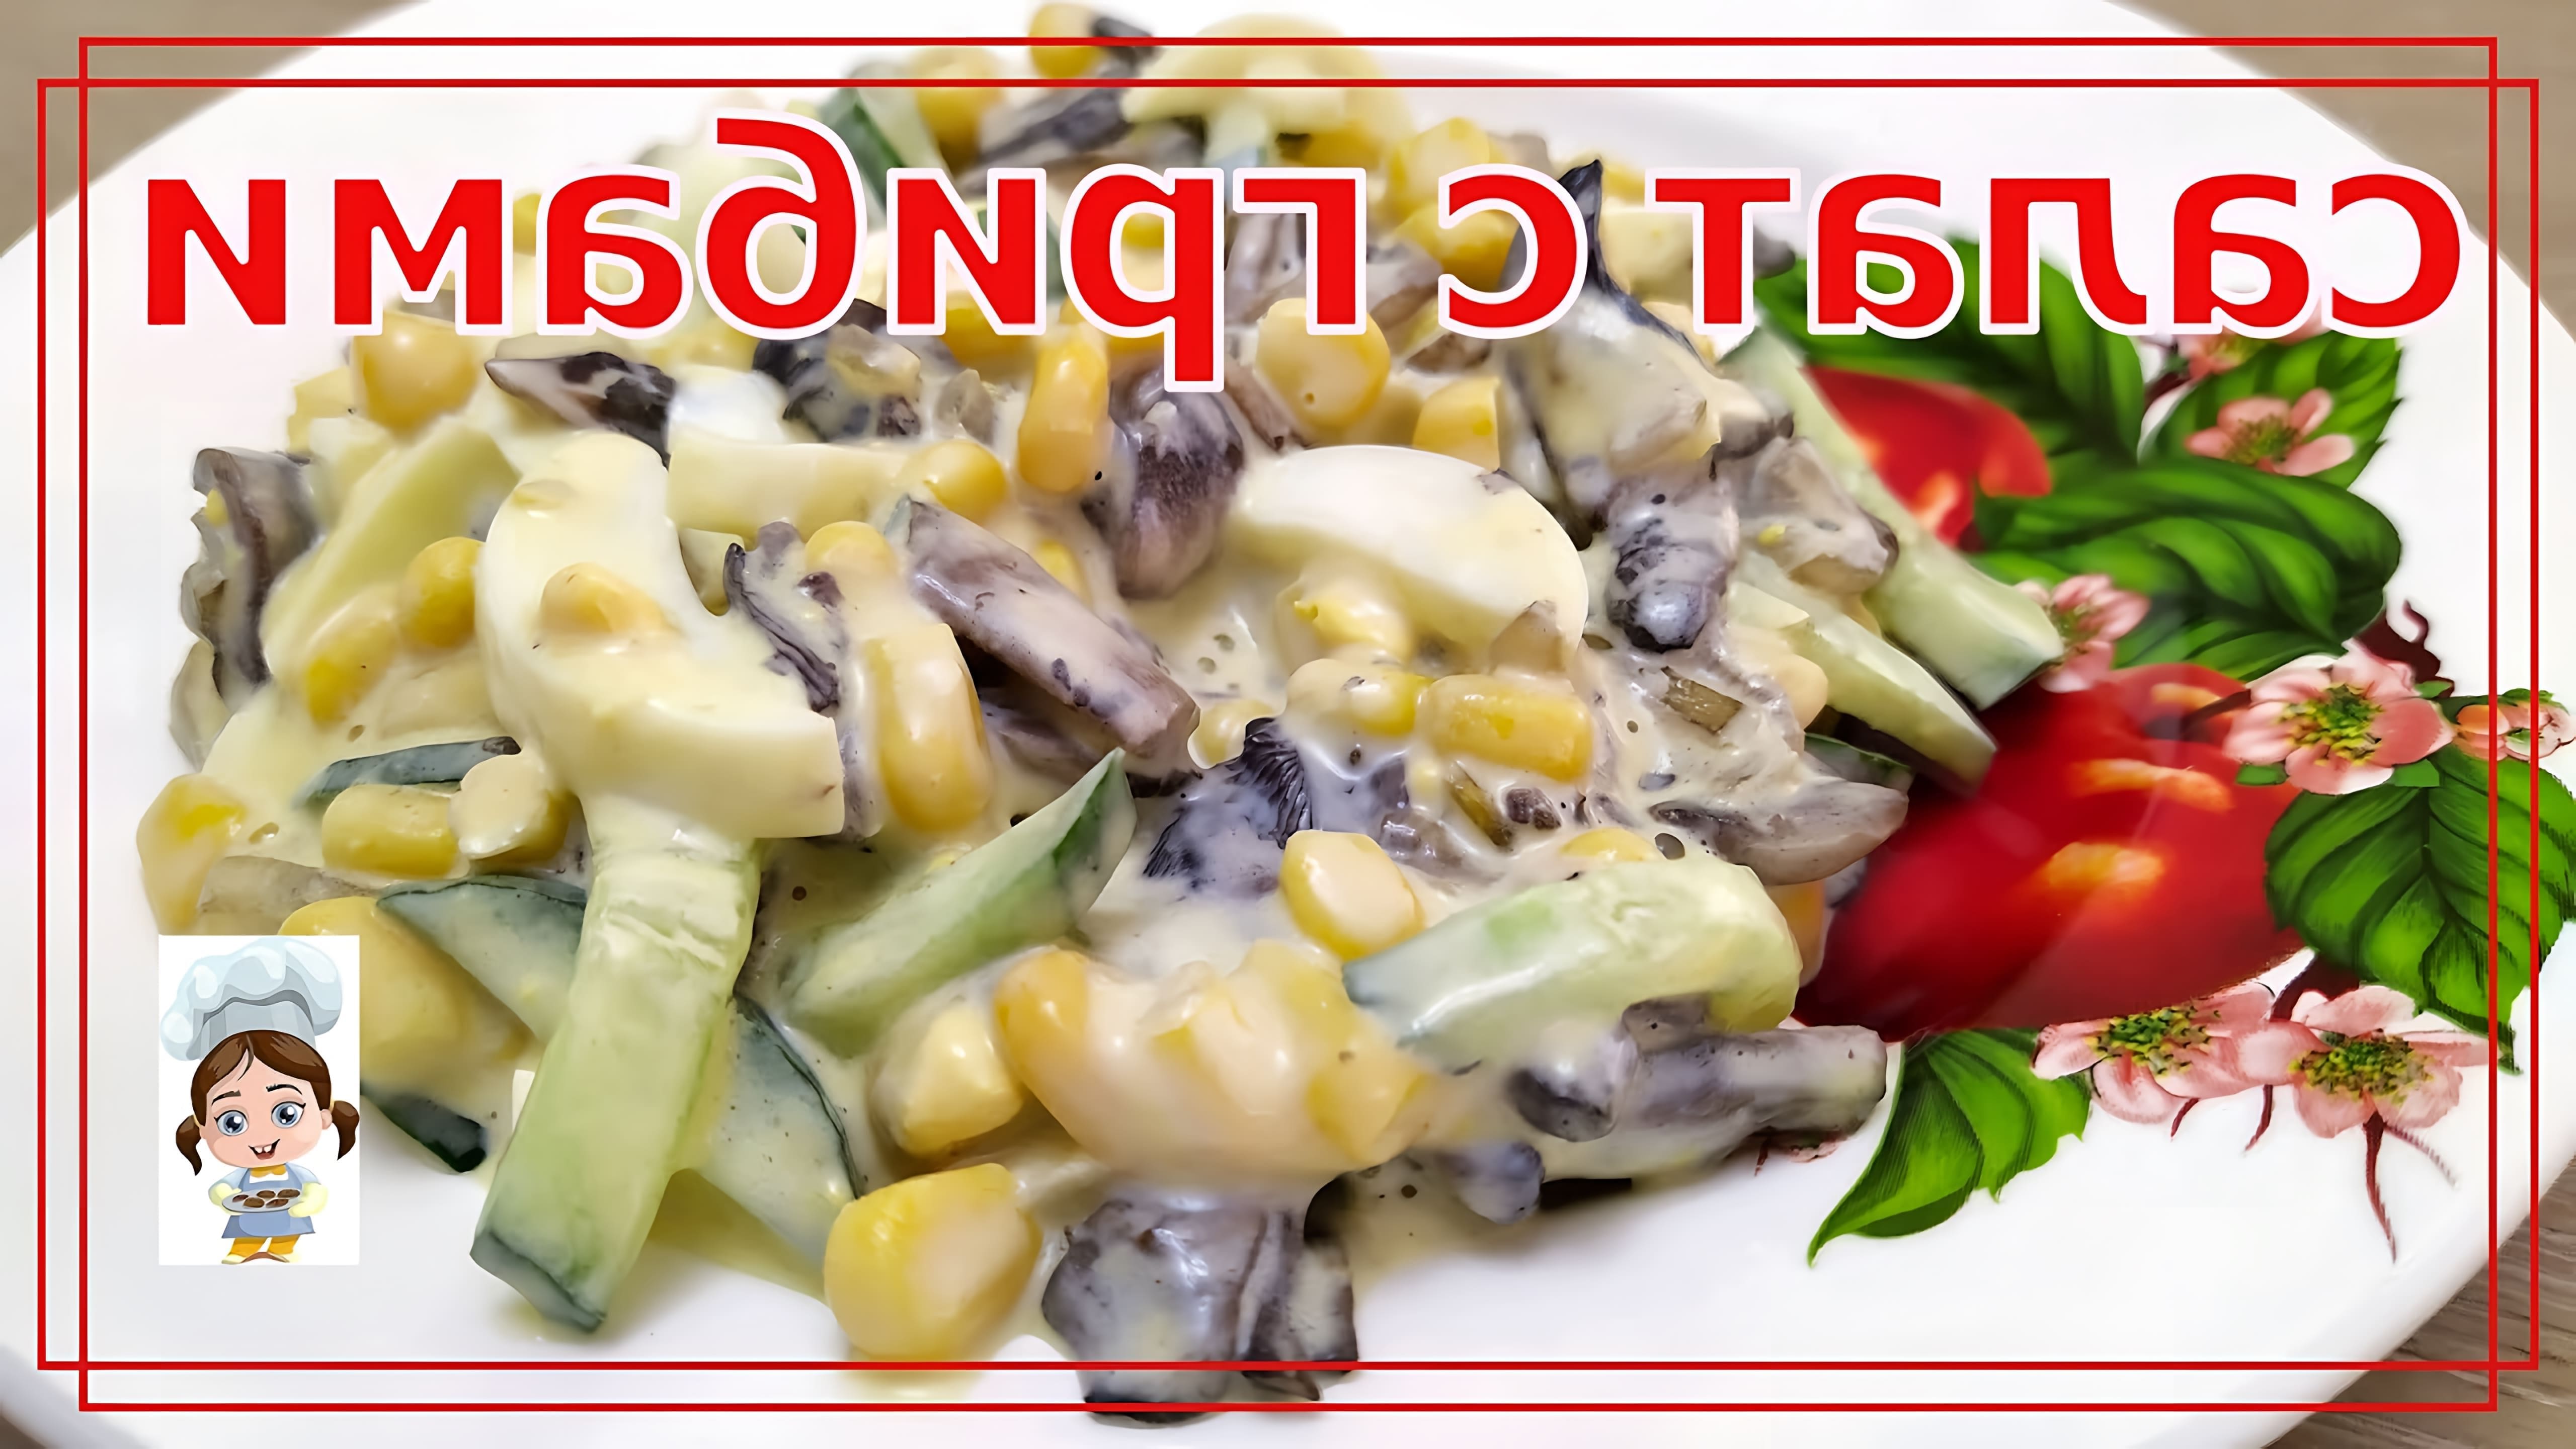 Легкий салат с грибами шампиньонами - простой и быстрый рецепт

В этом видео-ролике вы увидите, как приготовить легкий салат с грибами шампиньонами